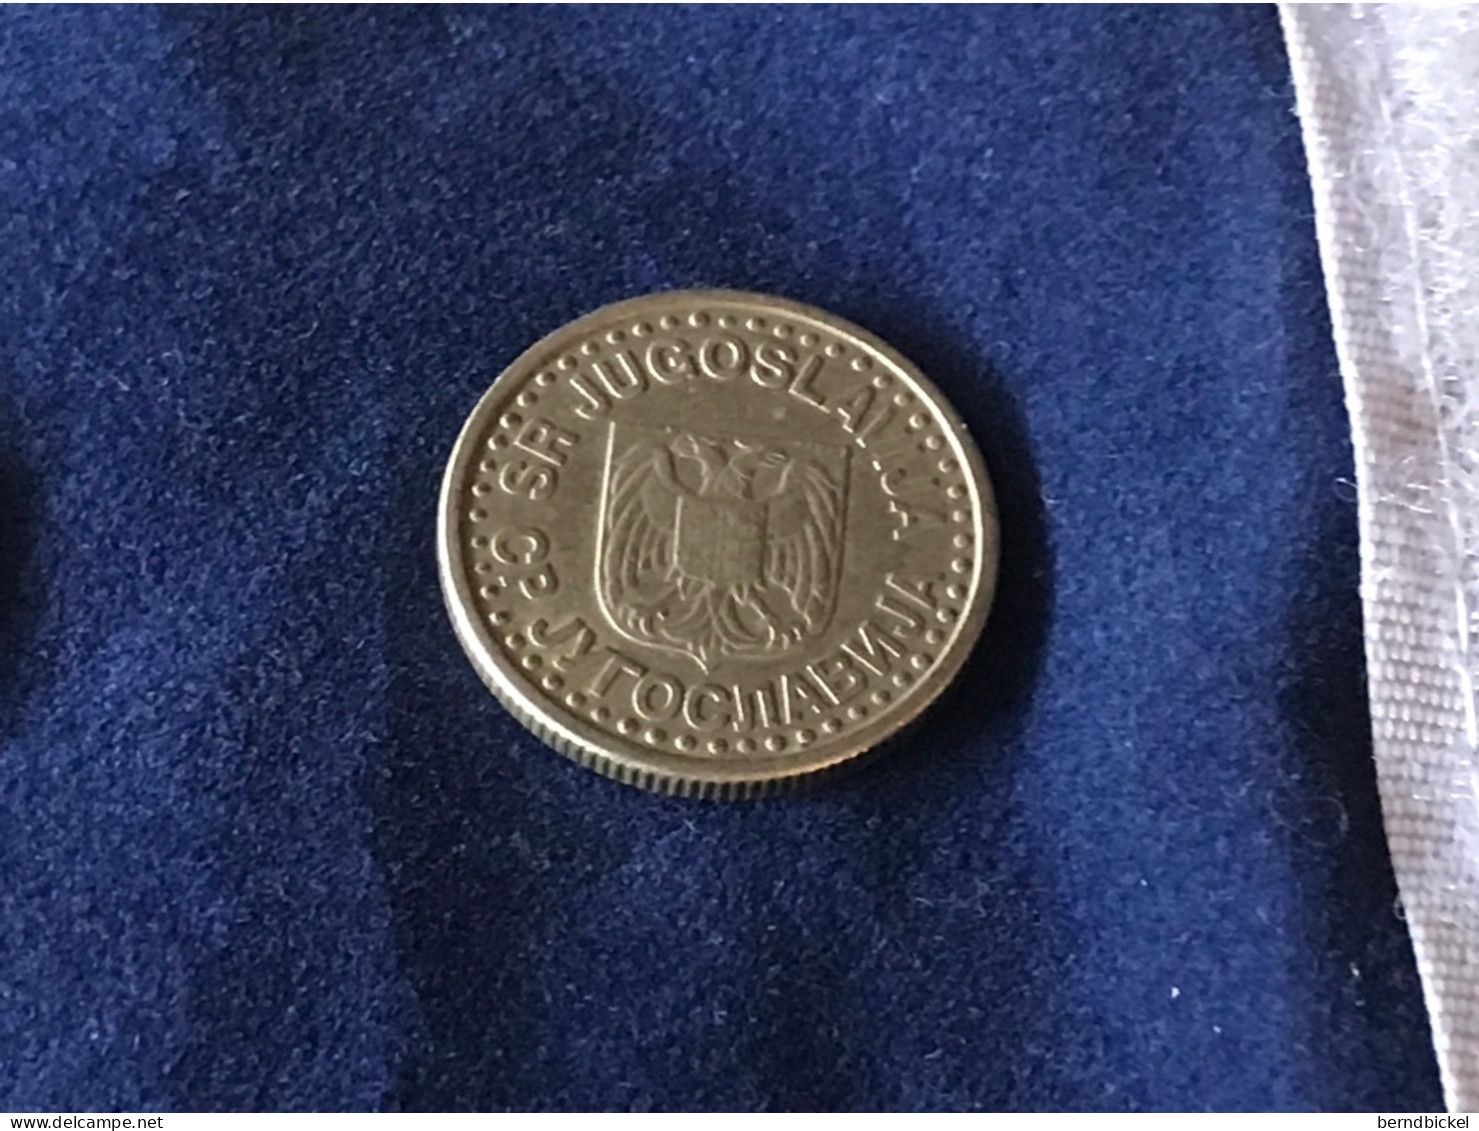 Münze Münzen Umlaufmünze Jugoslawien 1 Dinar 1996 - Kenia